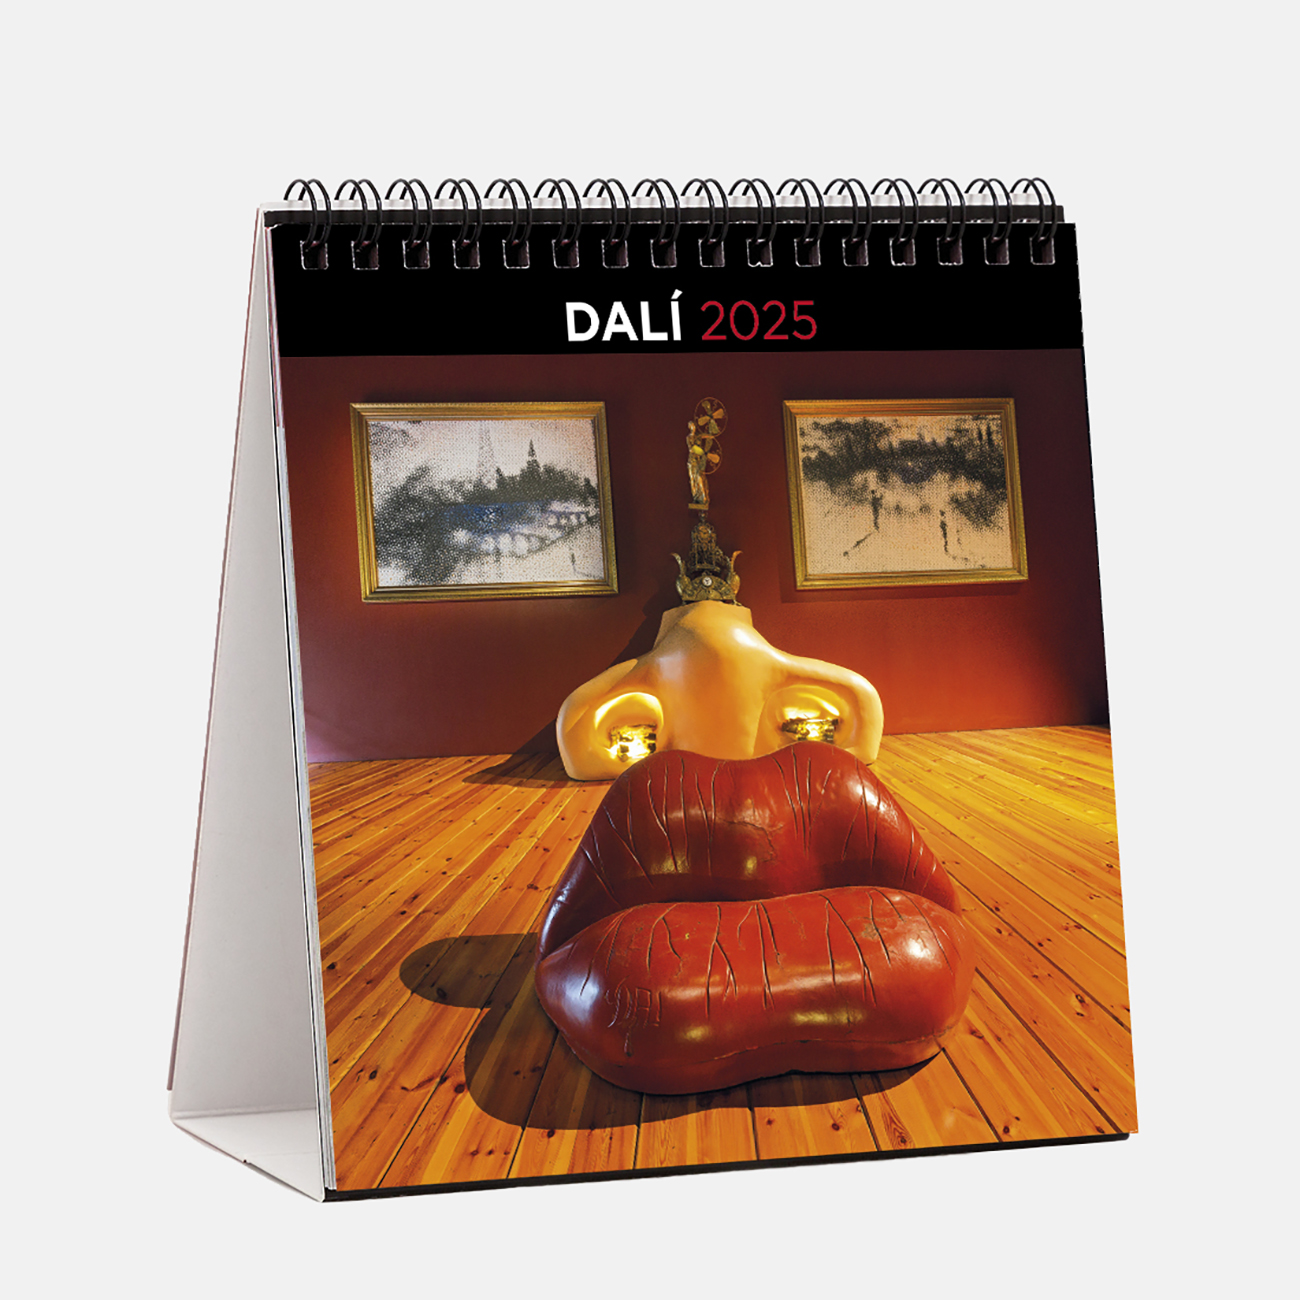 Calendario 2025 Dalí s25d calendario sobremesa 2025 salvador dali